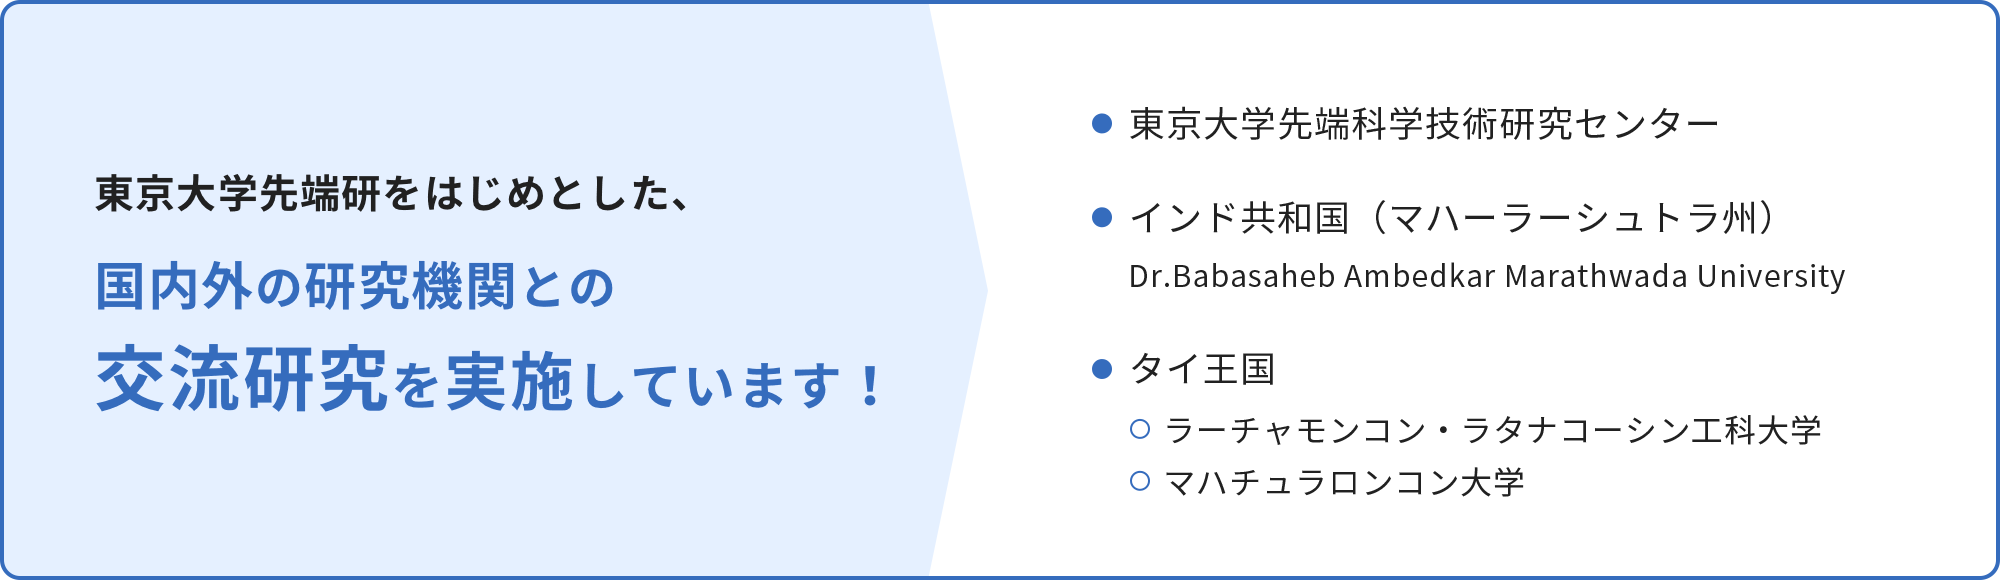 東京大学先端研をはじめとした、国内外の研究機関との交流研究を実施しています！